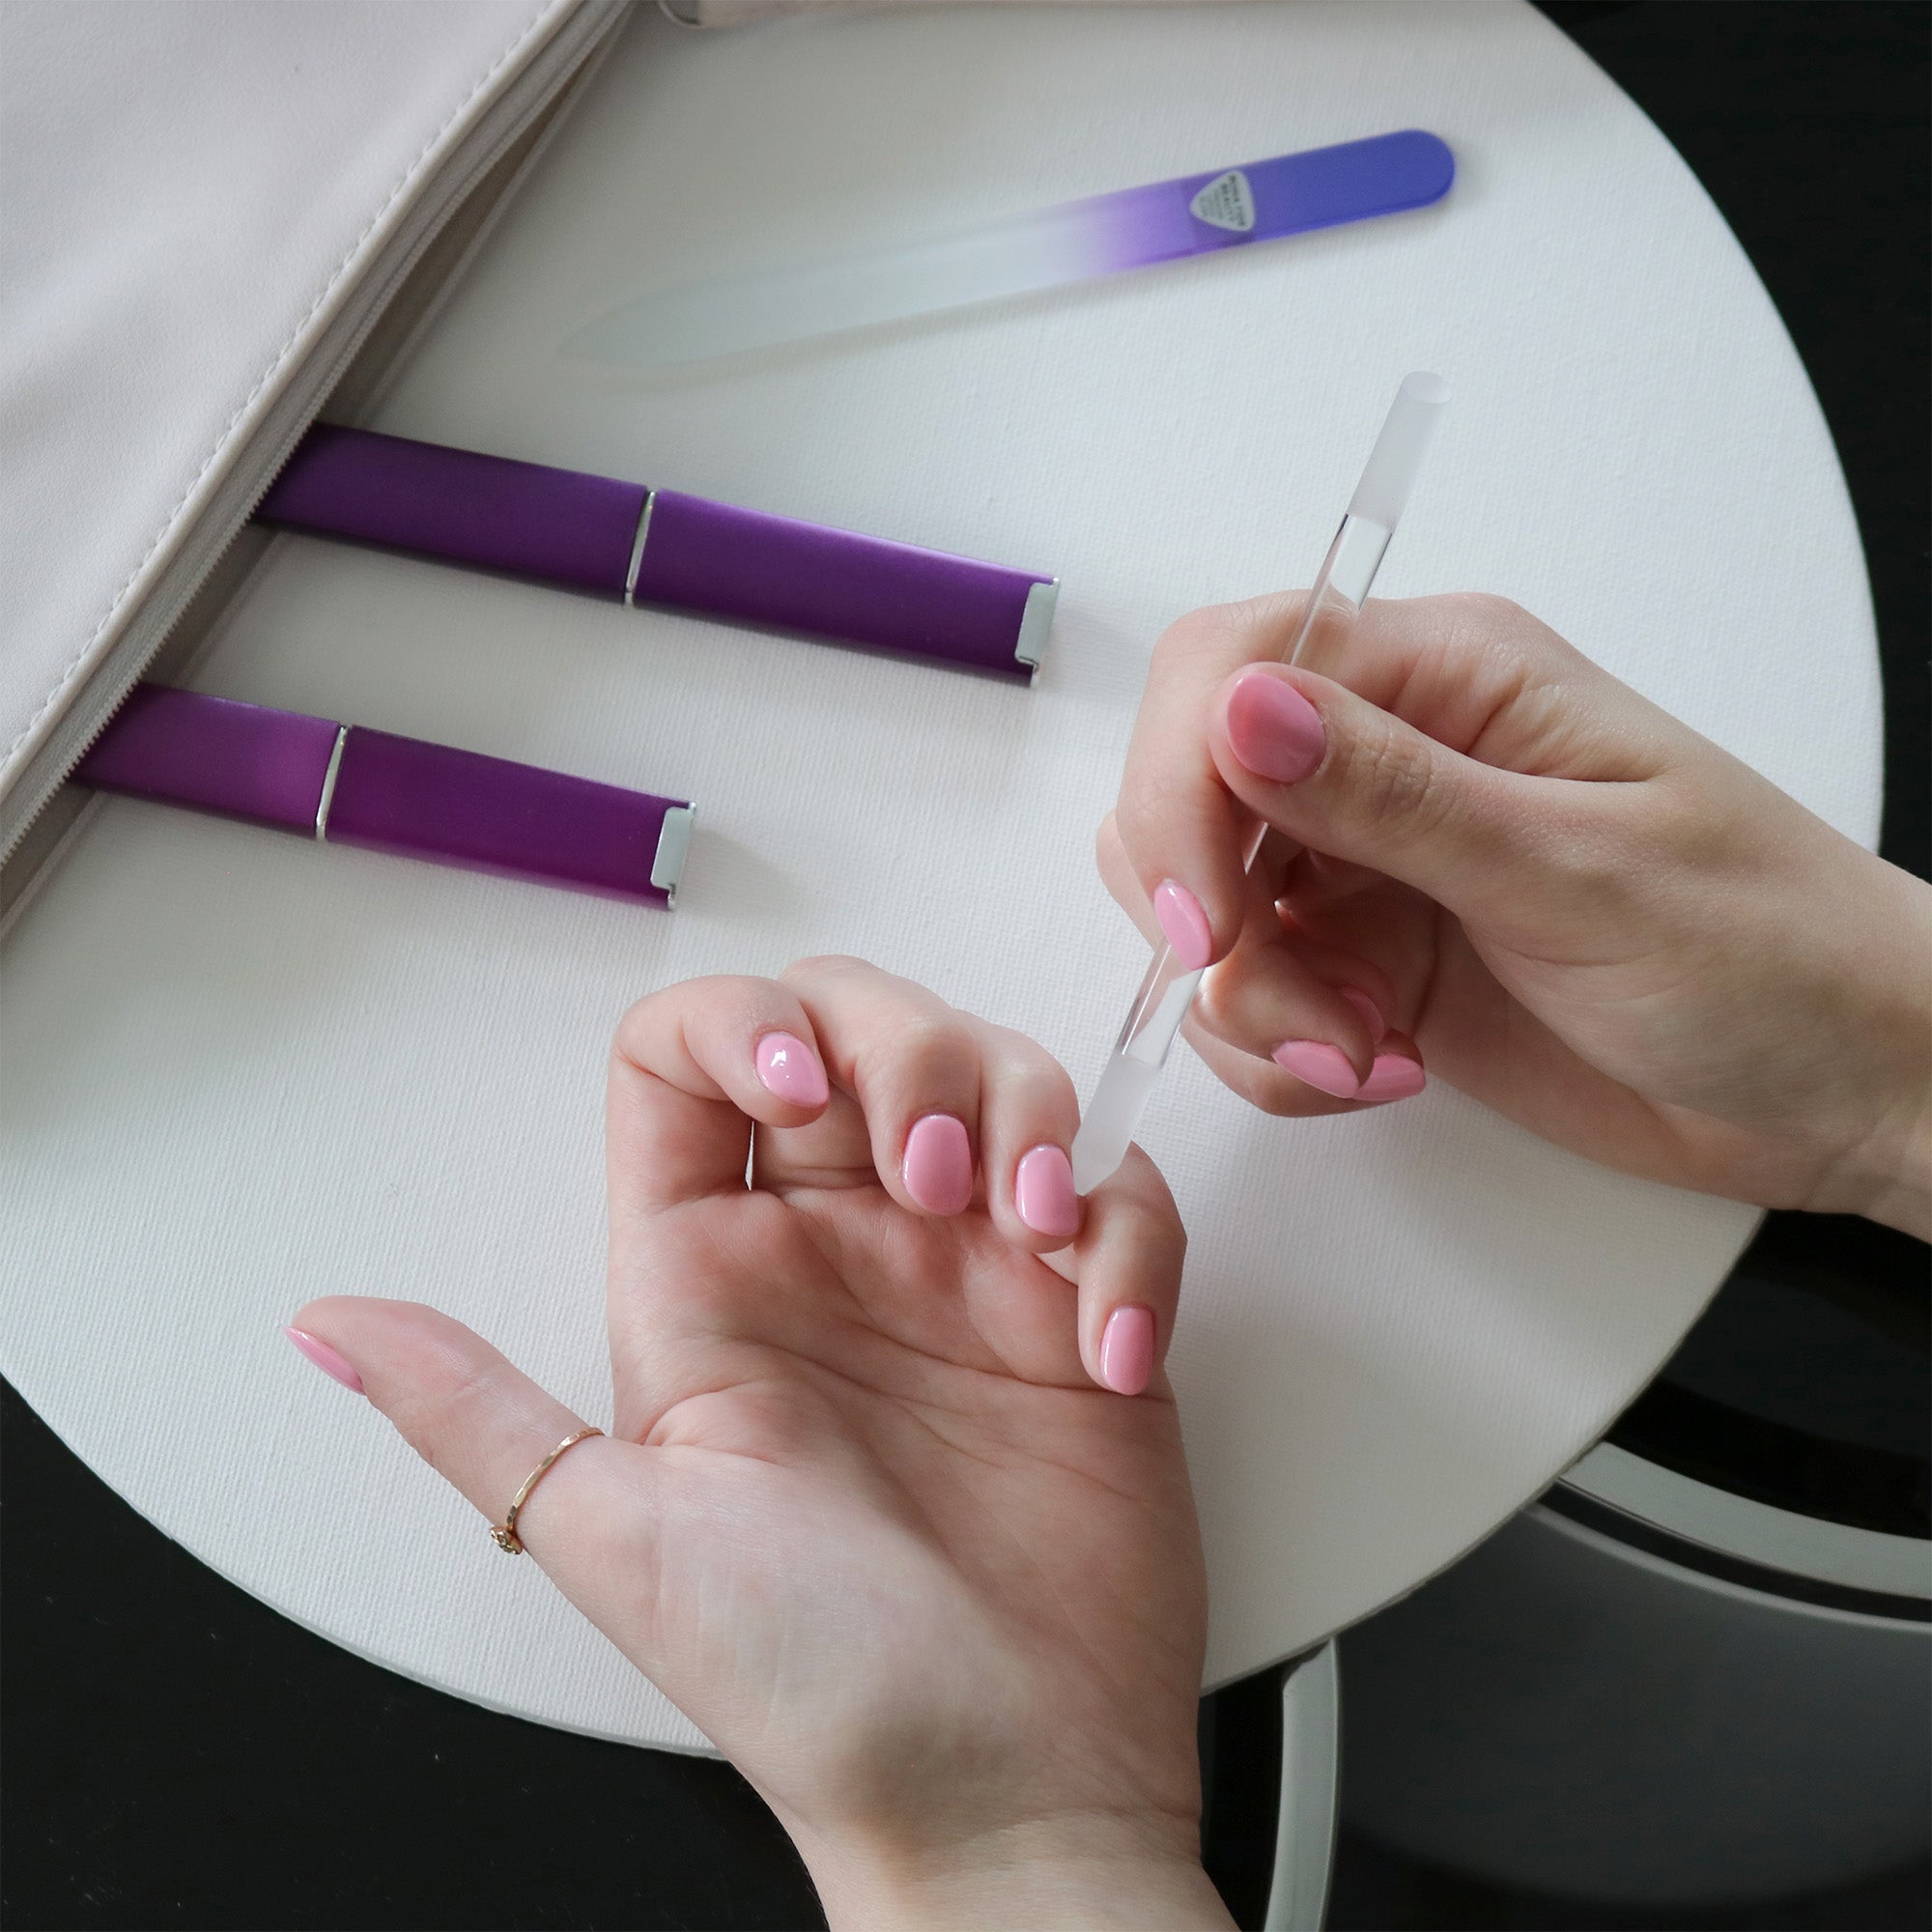 Czech Glass Manicure Set - Violet